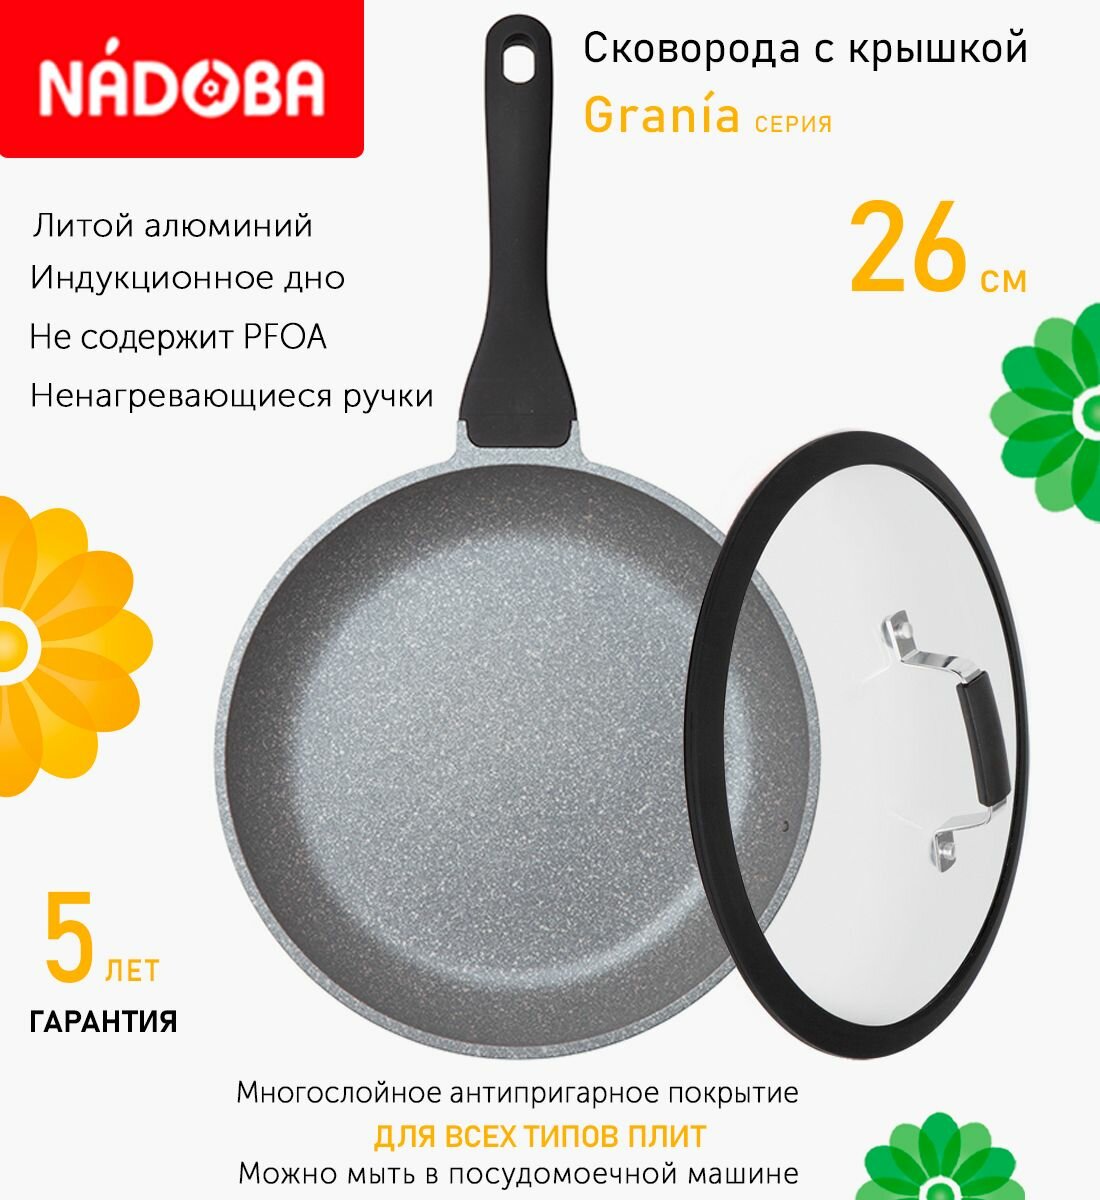 Сковорода с крышкой NADOBA 26см, серия "Grania" (арт. 728117/751412)